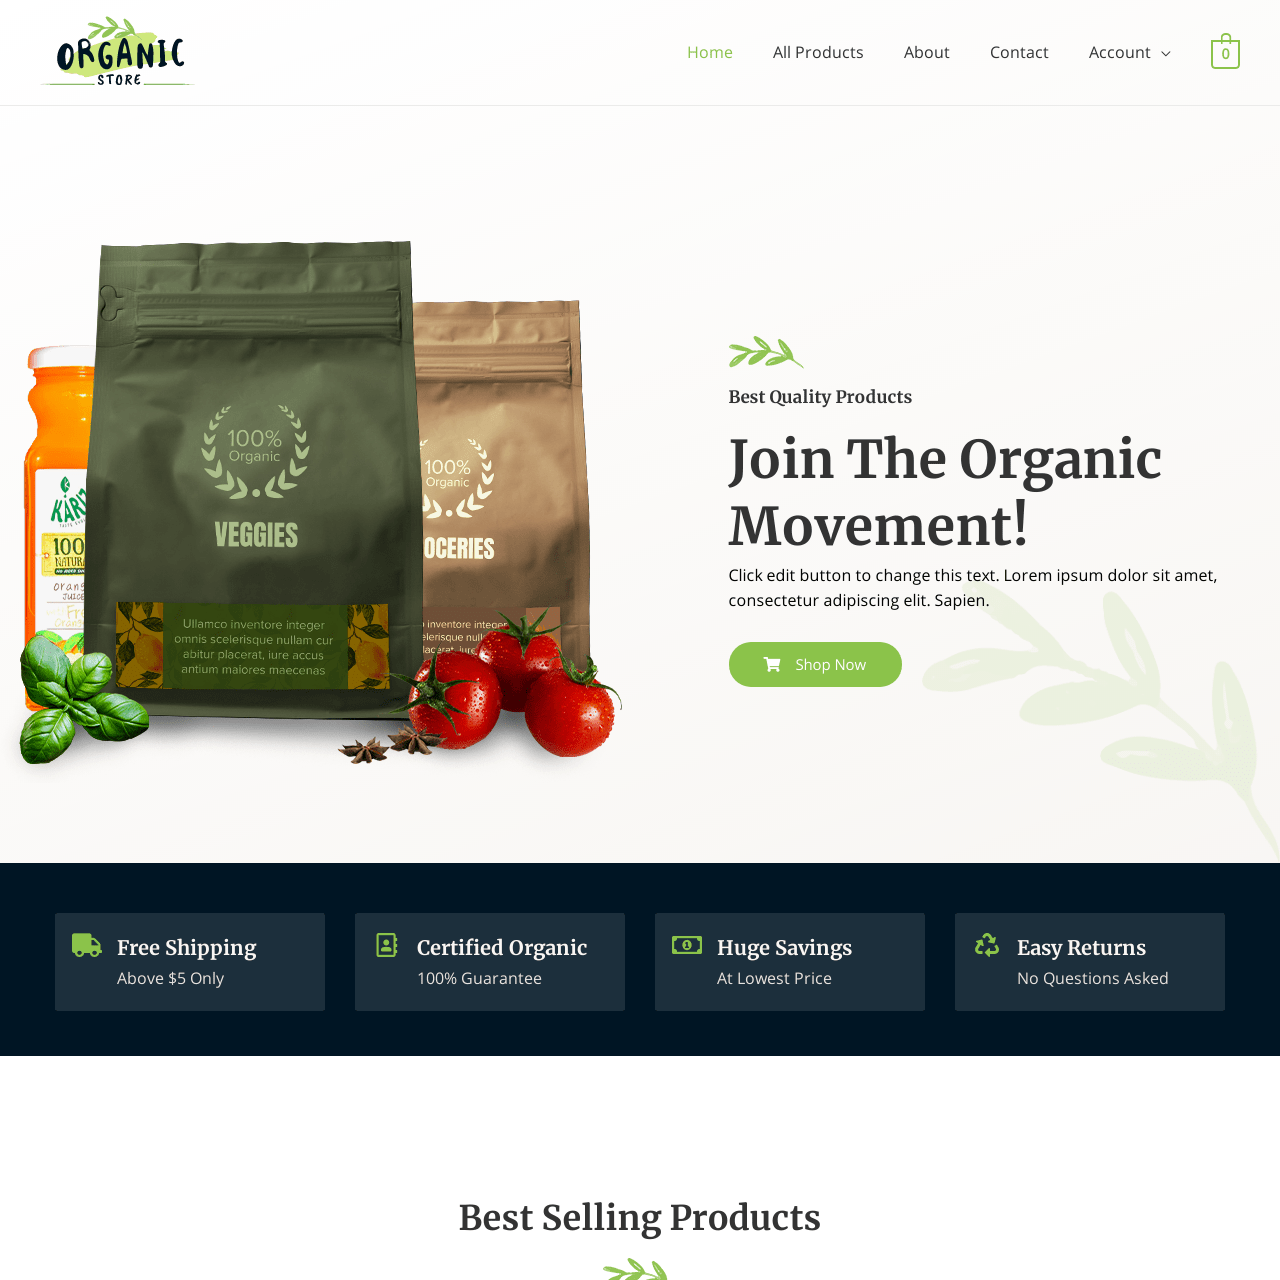 oragnic store website design2